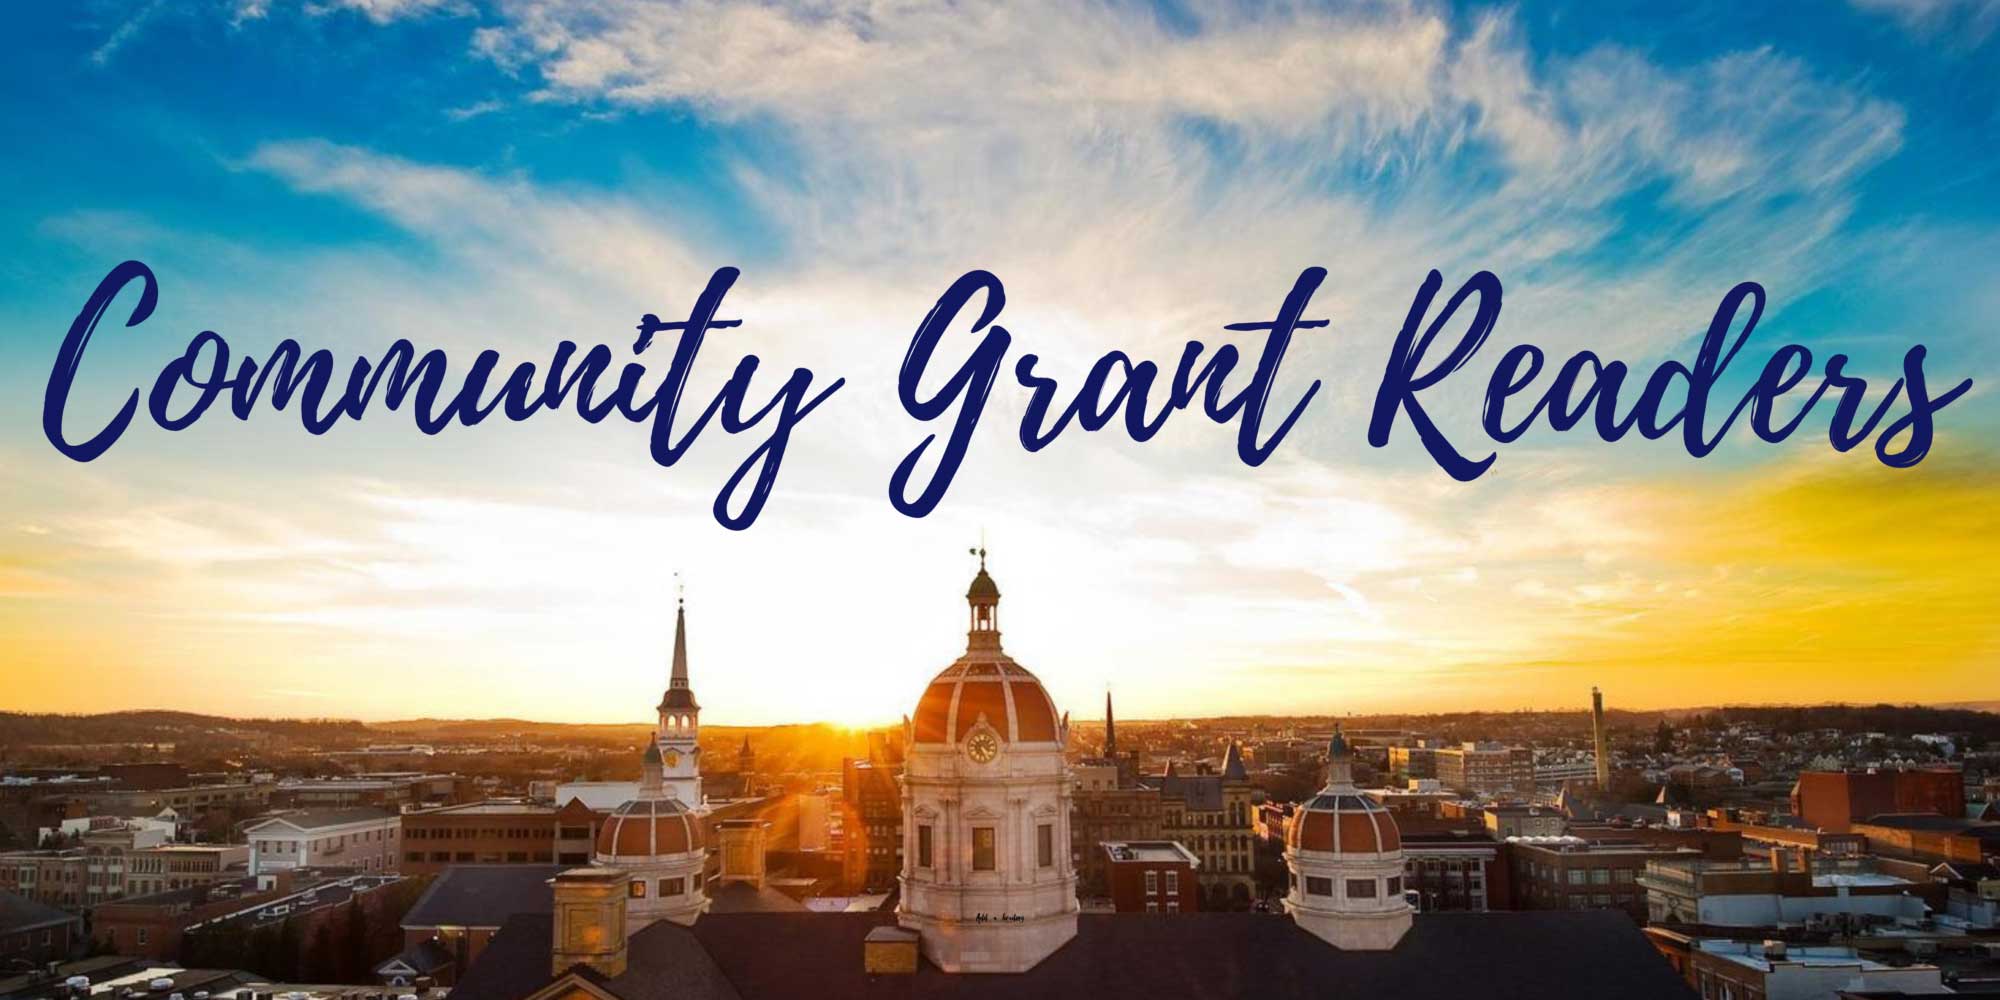 Community Grant Reader: Melissa King